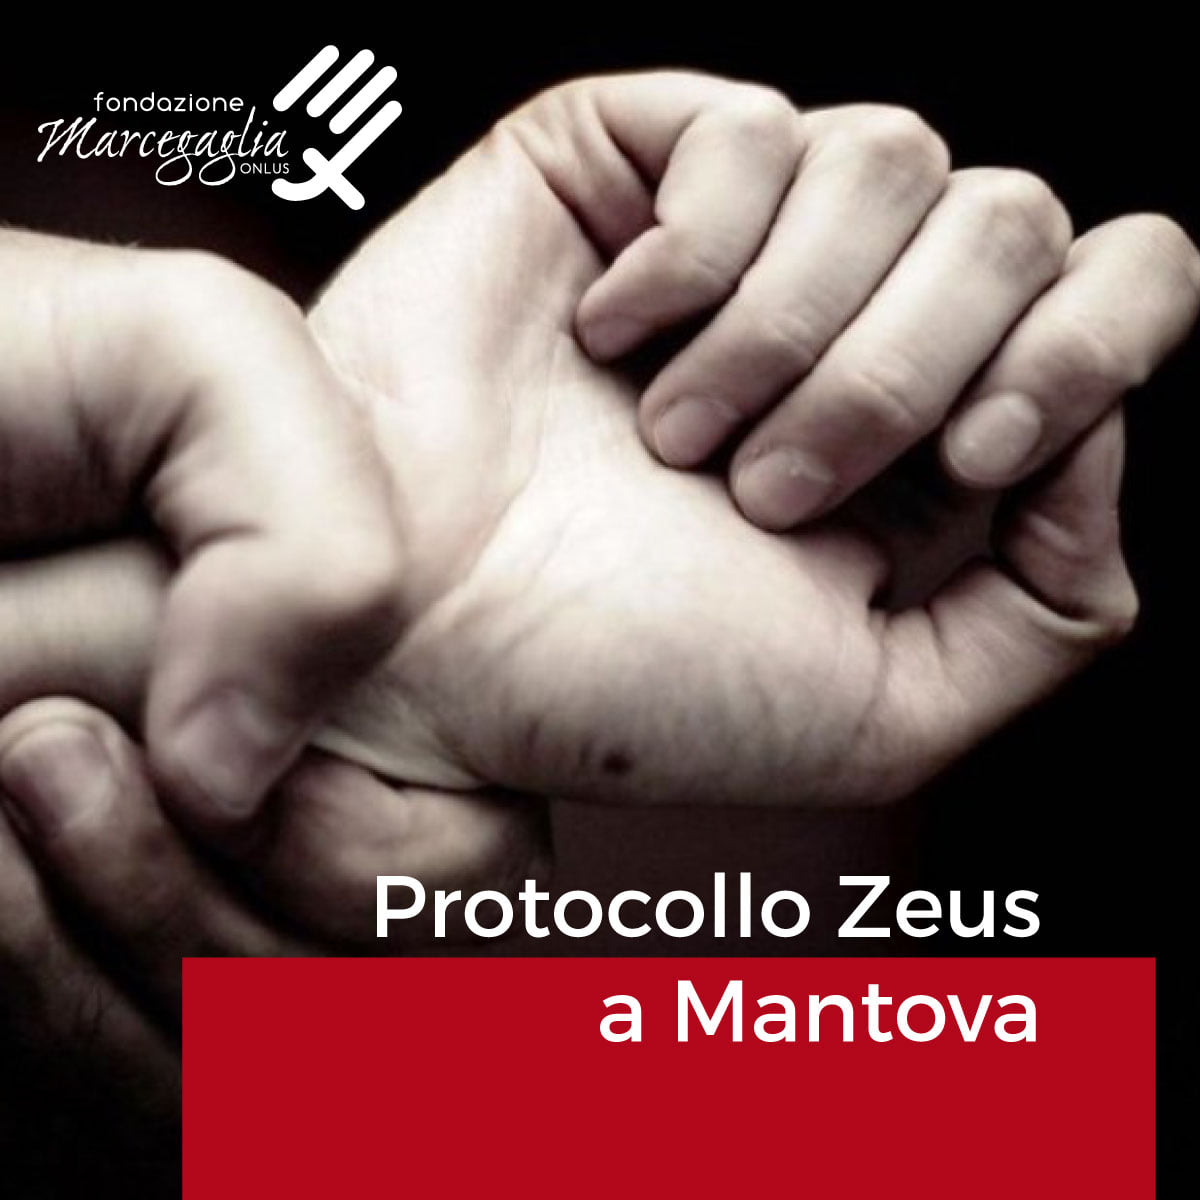 FONDAZIONE MARCEGAGLIA ONLUS: PROTOCOLLO ZEUS A MANTOVA